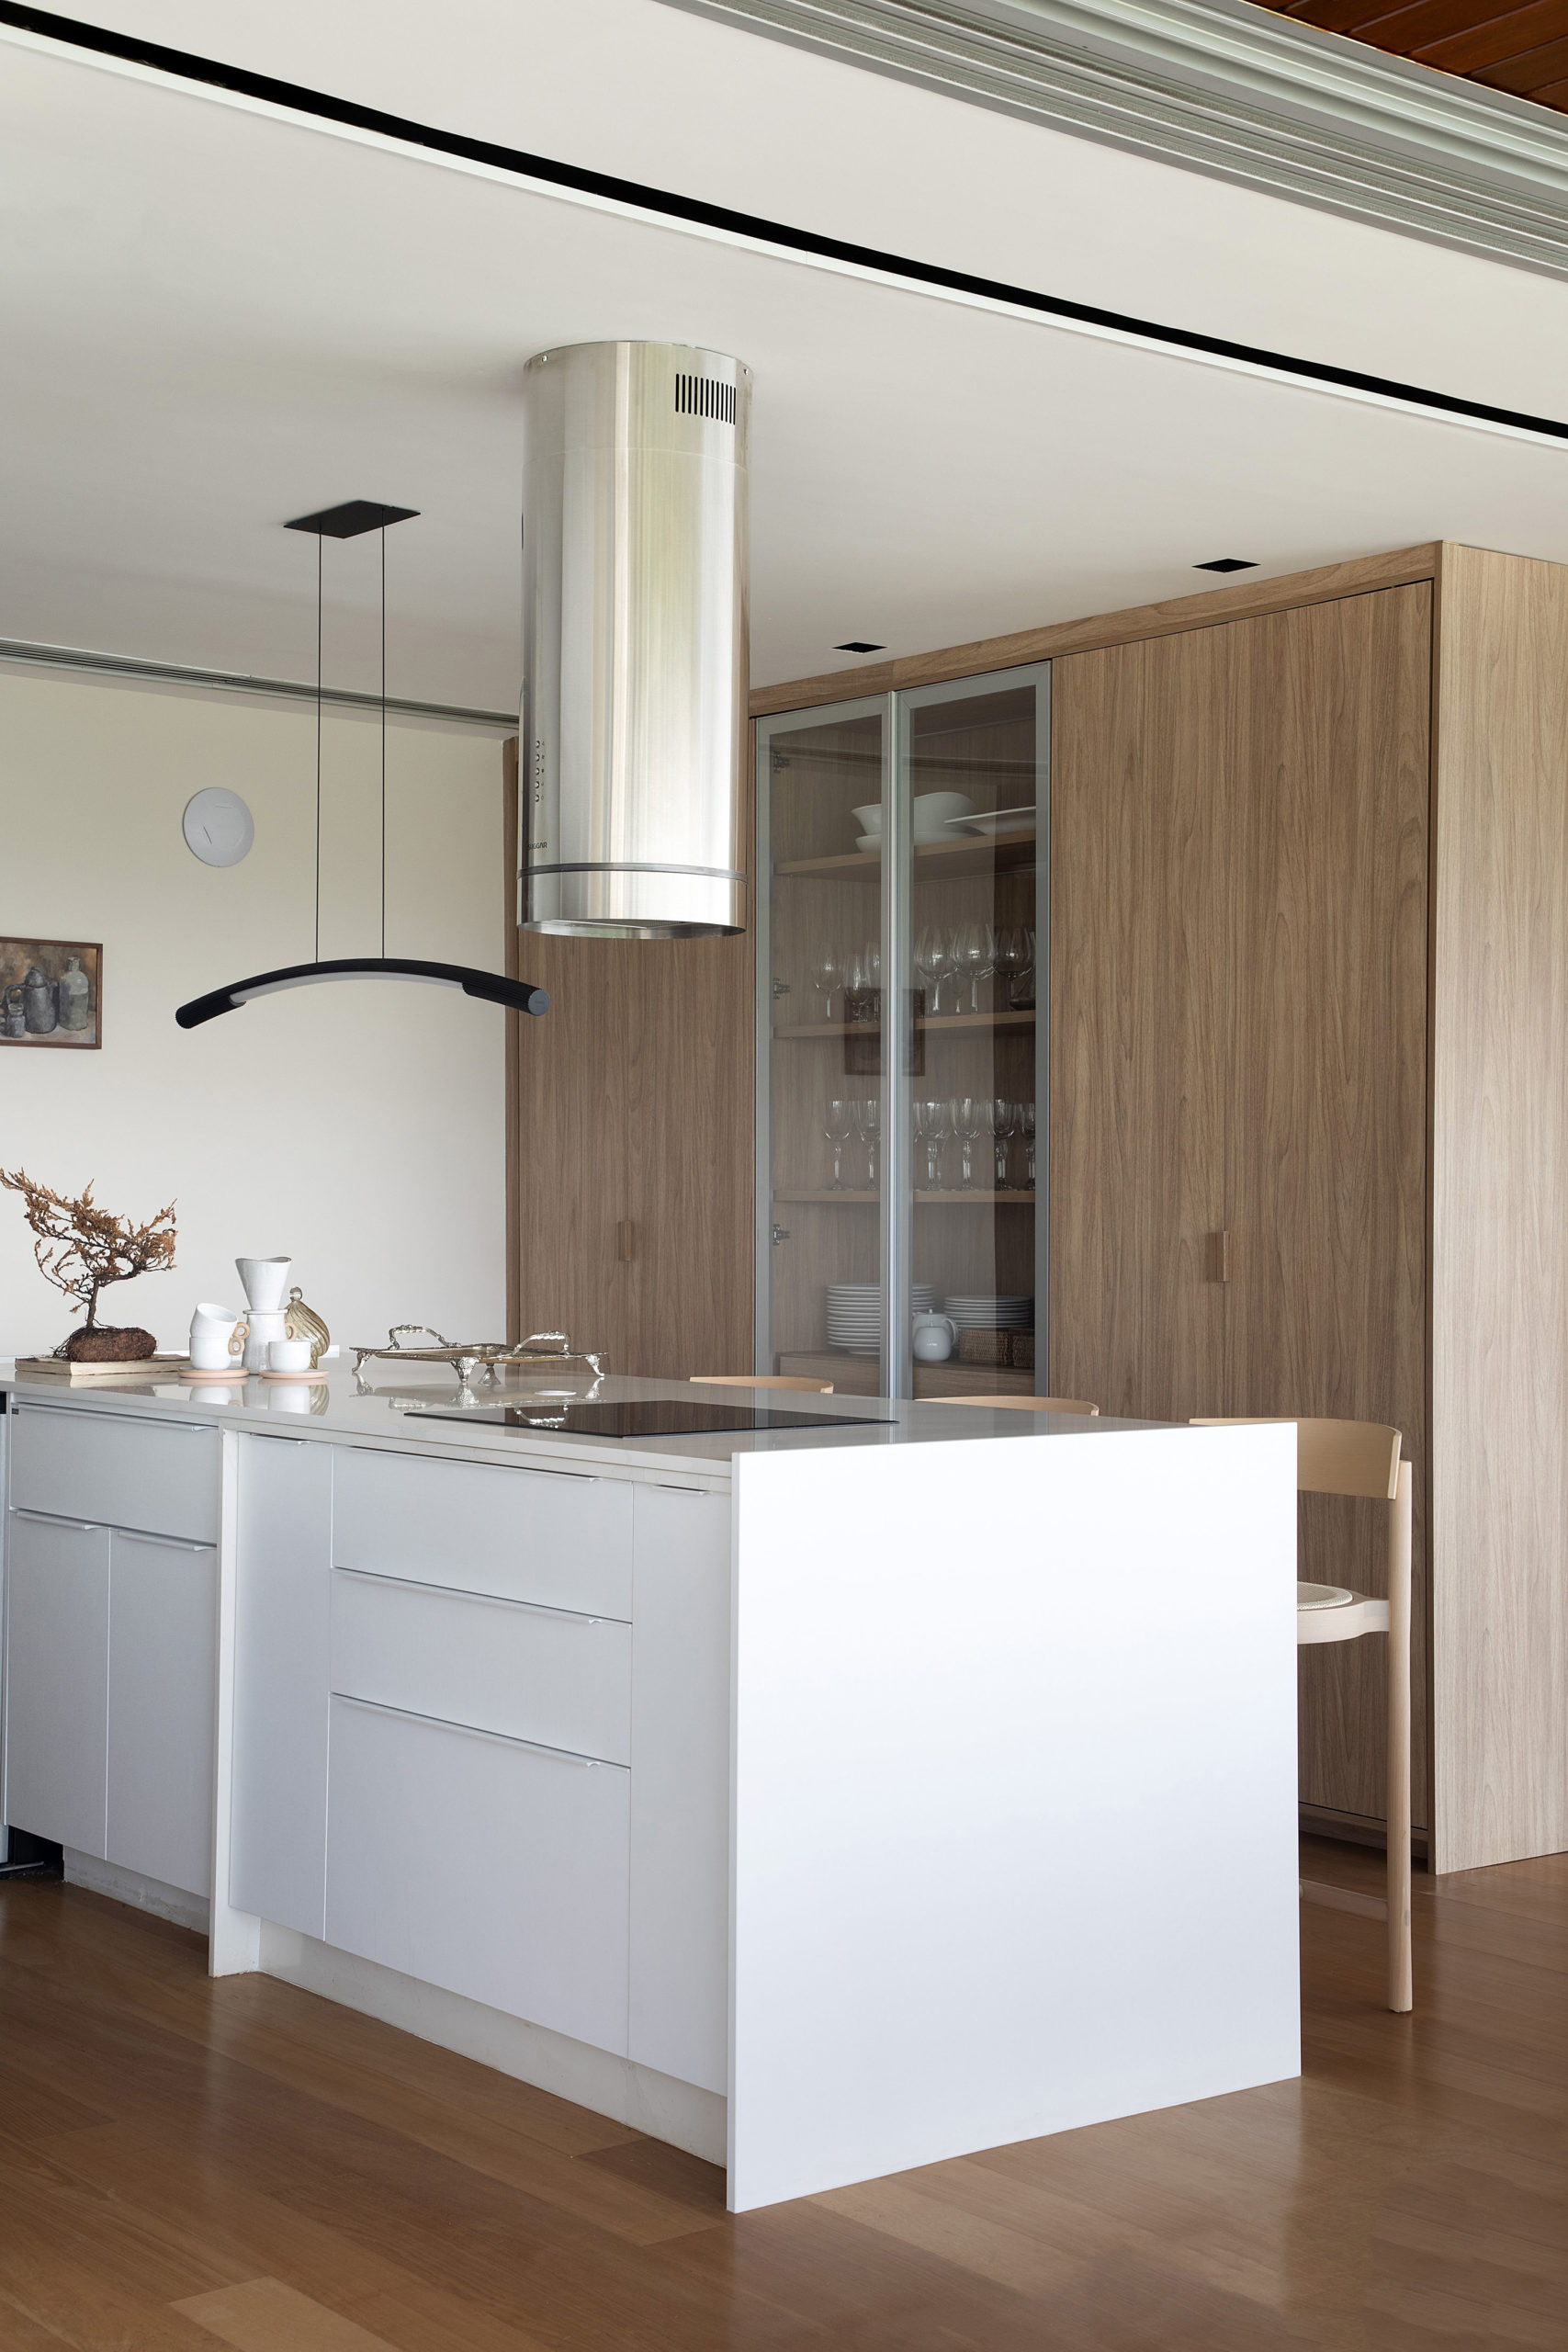 Cozinha incorporada ao living, com os armarios na cor branca, e ao fundo, um armario em madeira, com a porta do meio em vidro.